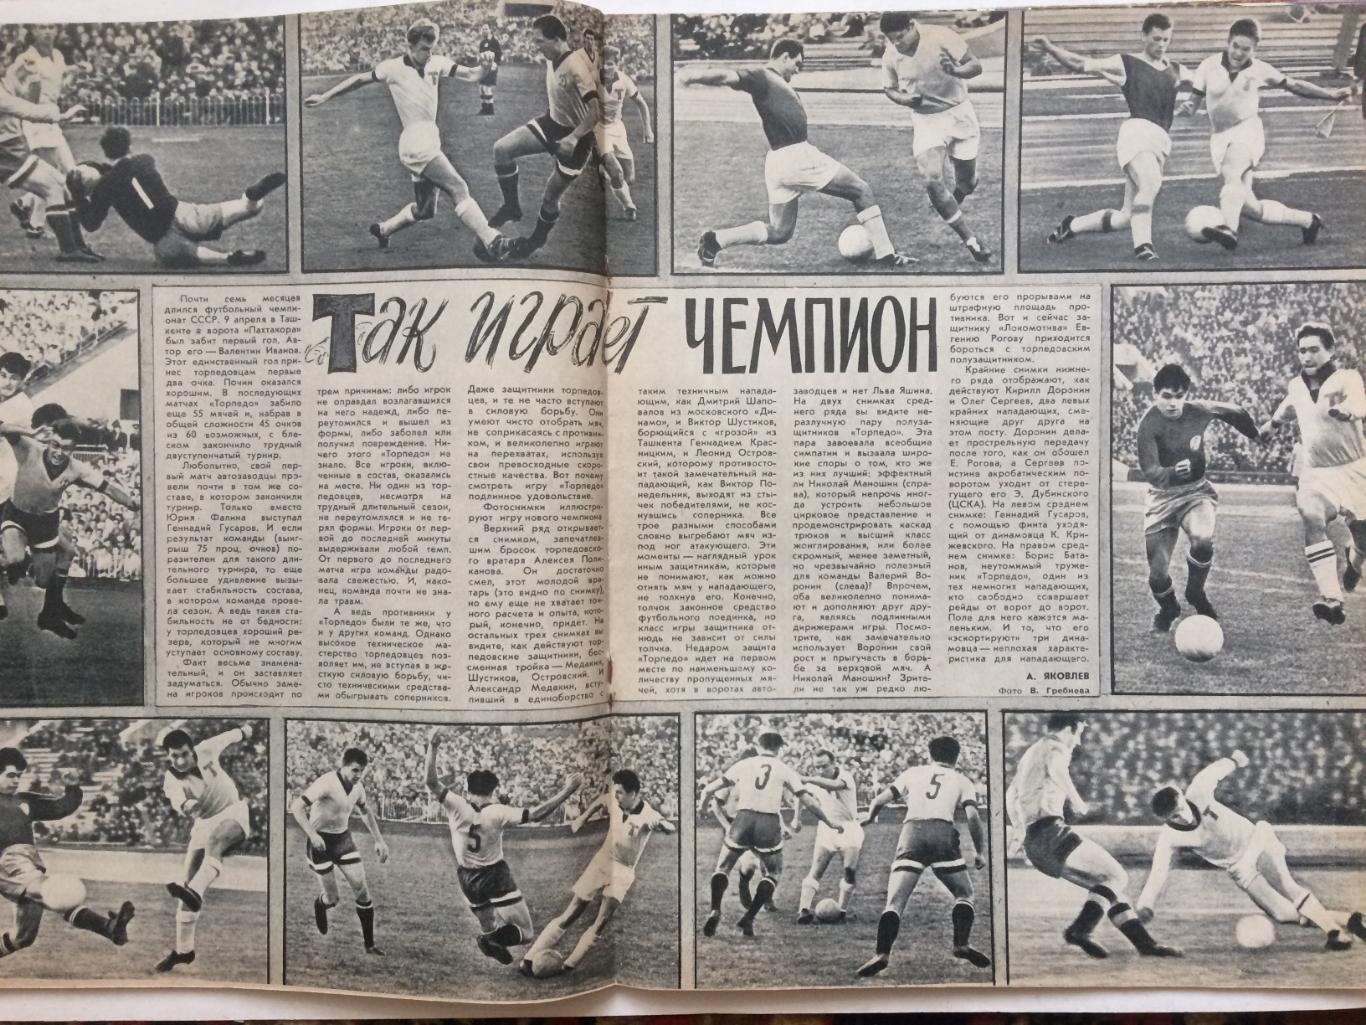 Журнал Спортивные игры №11 1960 Л.Яшин 1